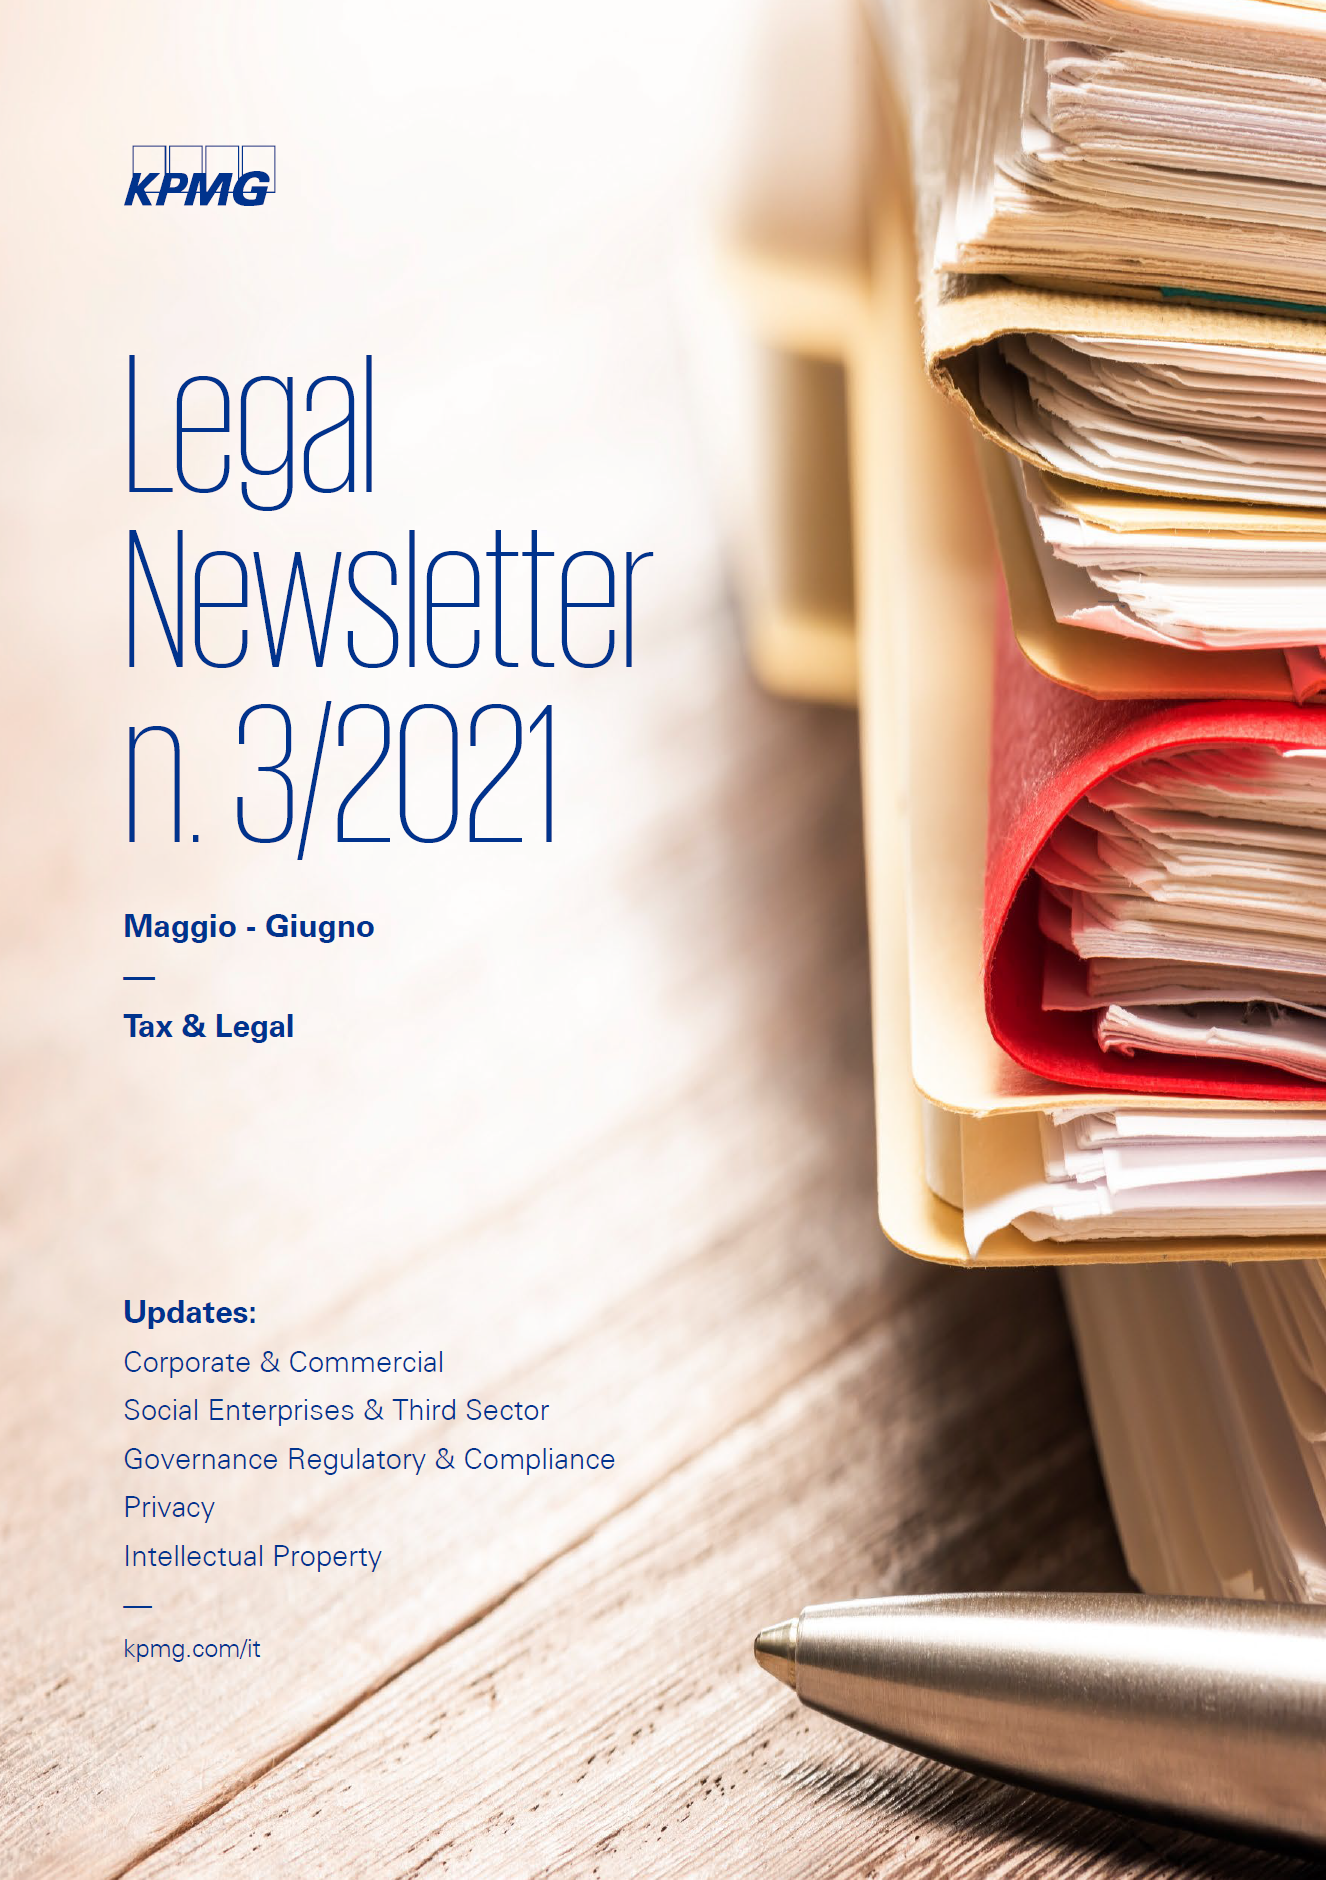 KPMG Legal Newsletter n. 3/2021